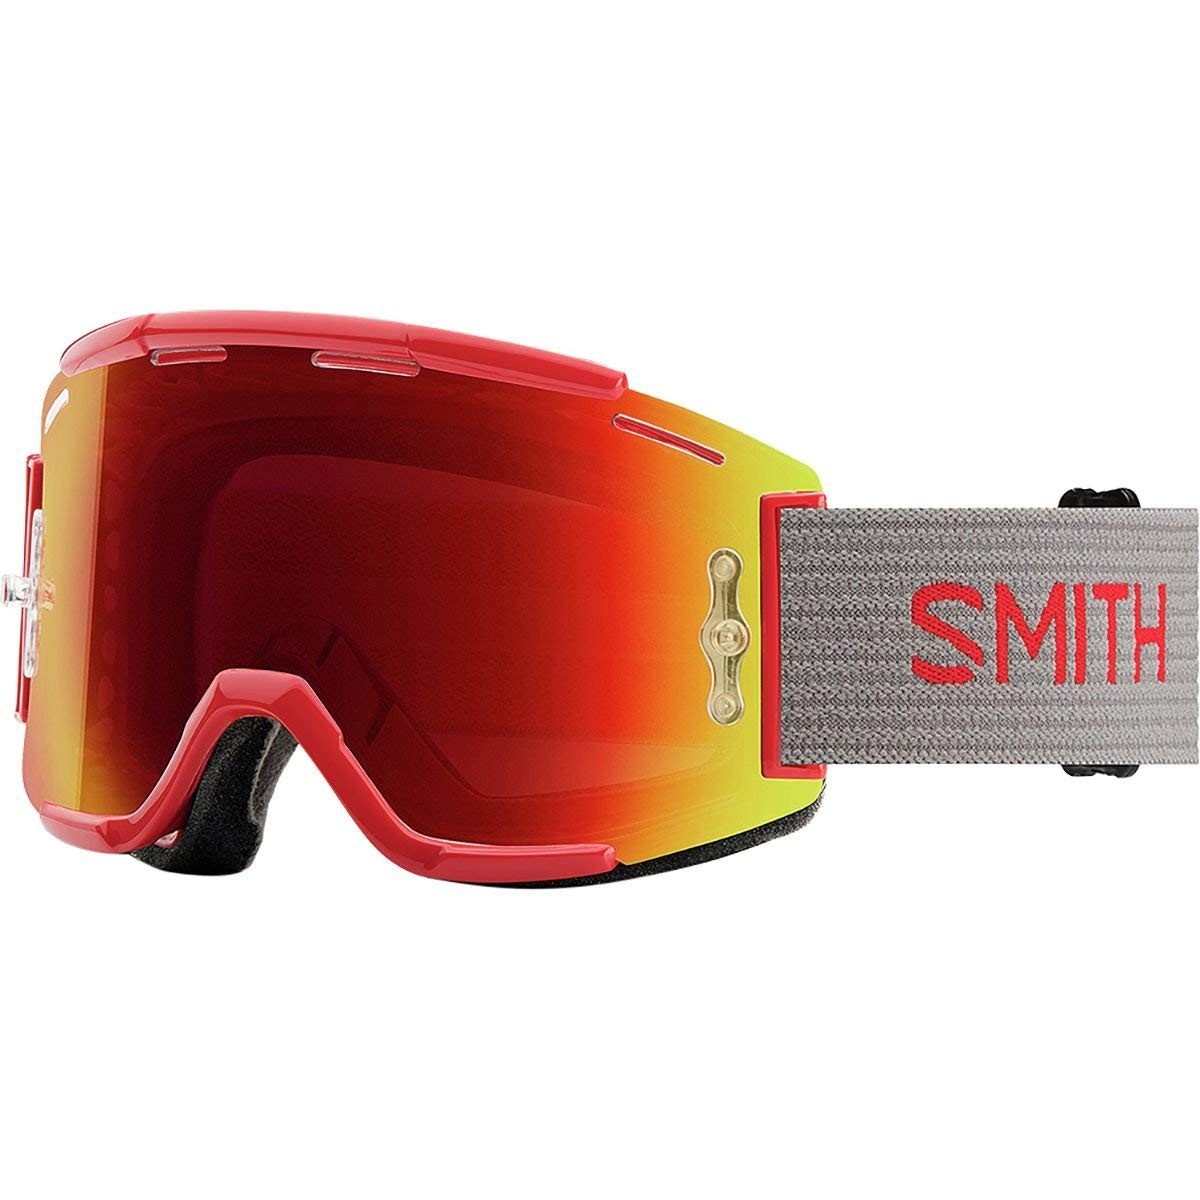 SMITH SQUAD MTB RISE SPLIT mit 2 Scheiben/Gläser